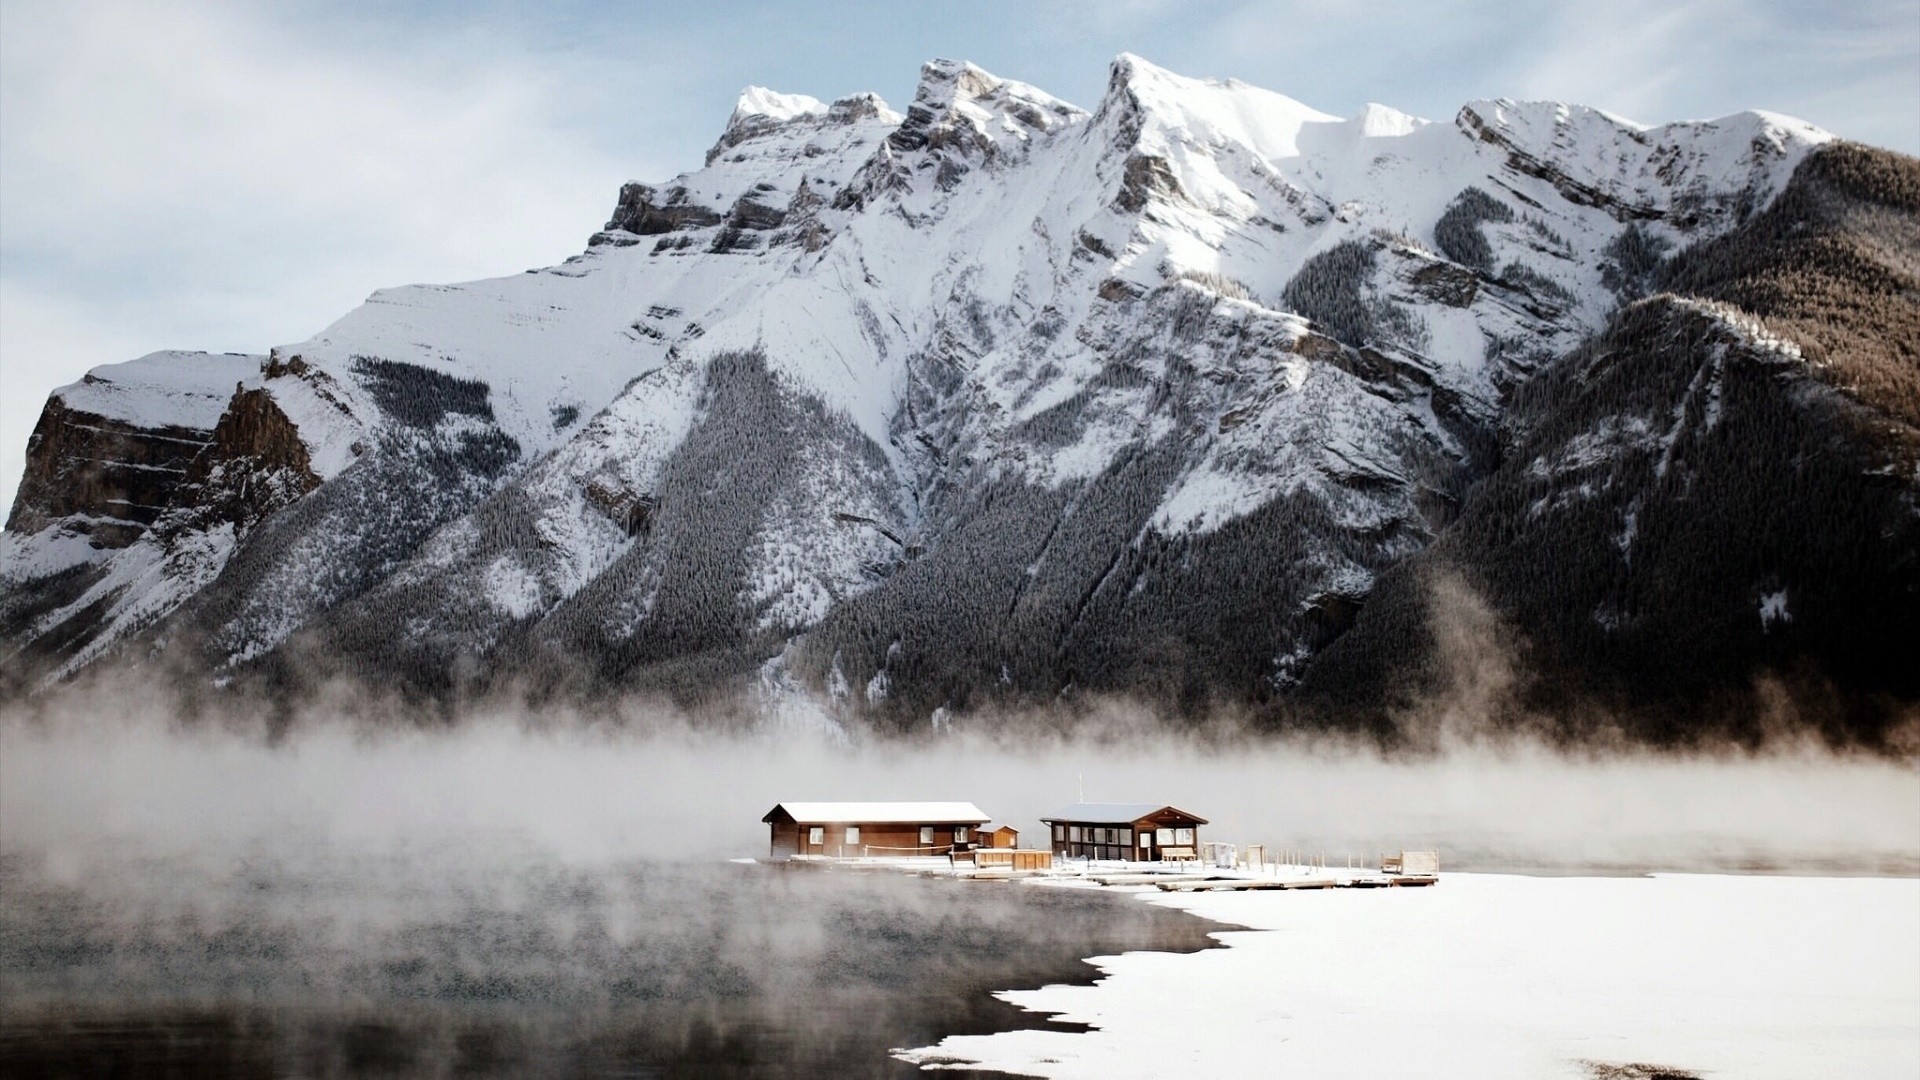 Wallpaper Canada's snow mountains